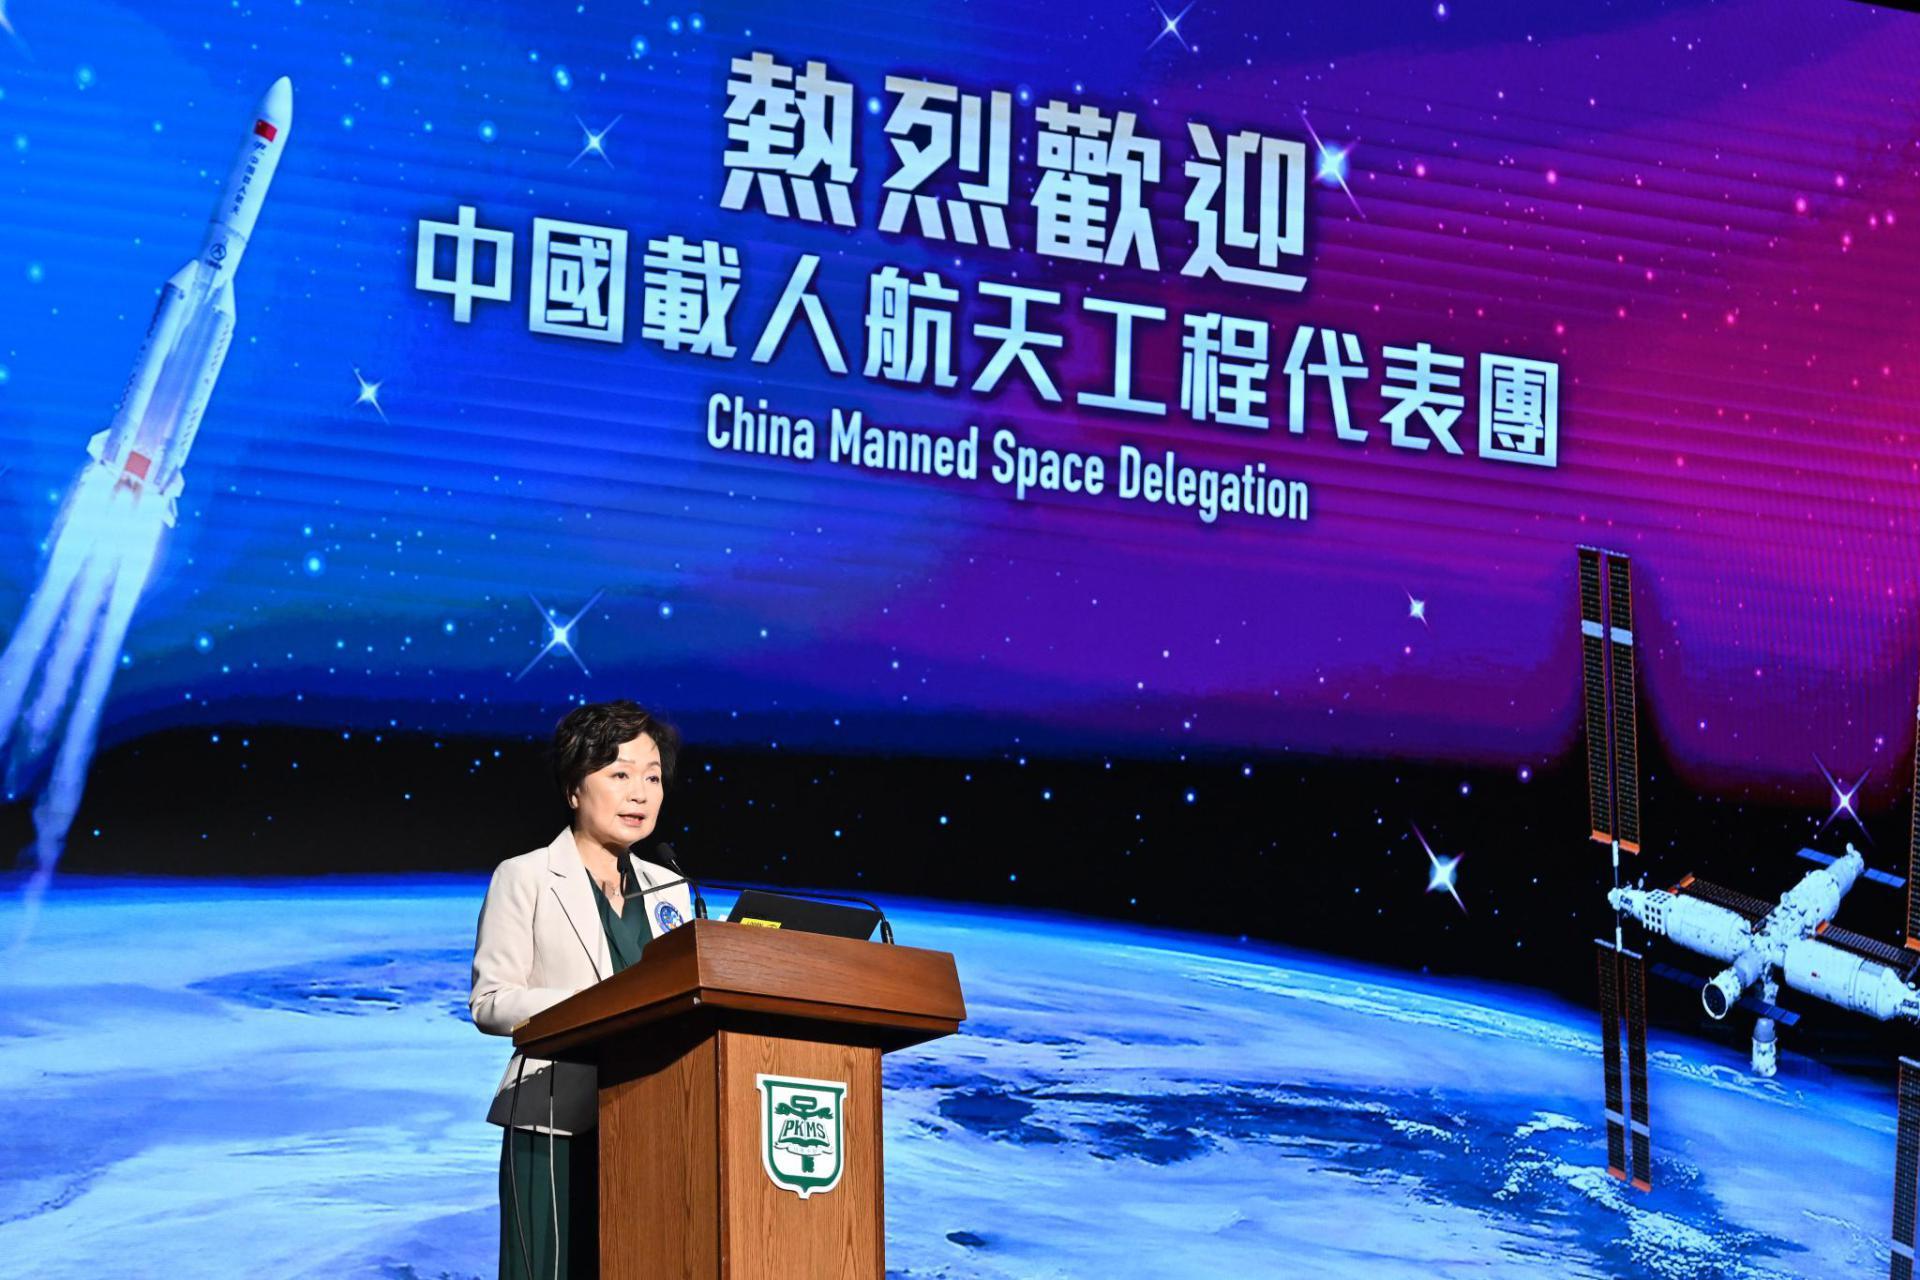 教育局局長蔡若蓮博士今日（十一月二十九日）出席在培僑中學舉行的「中國載人航天工程代表團與中、小學生真情對話」活動，並在活動上致辭。
